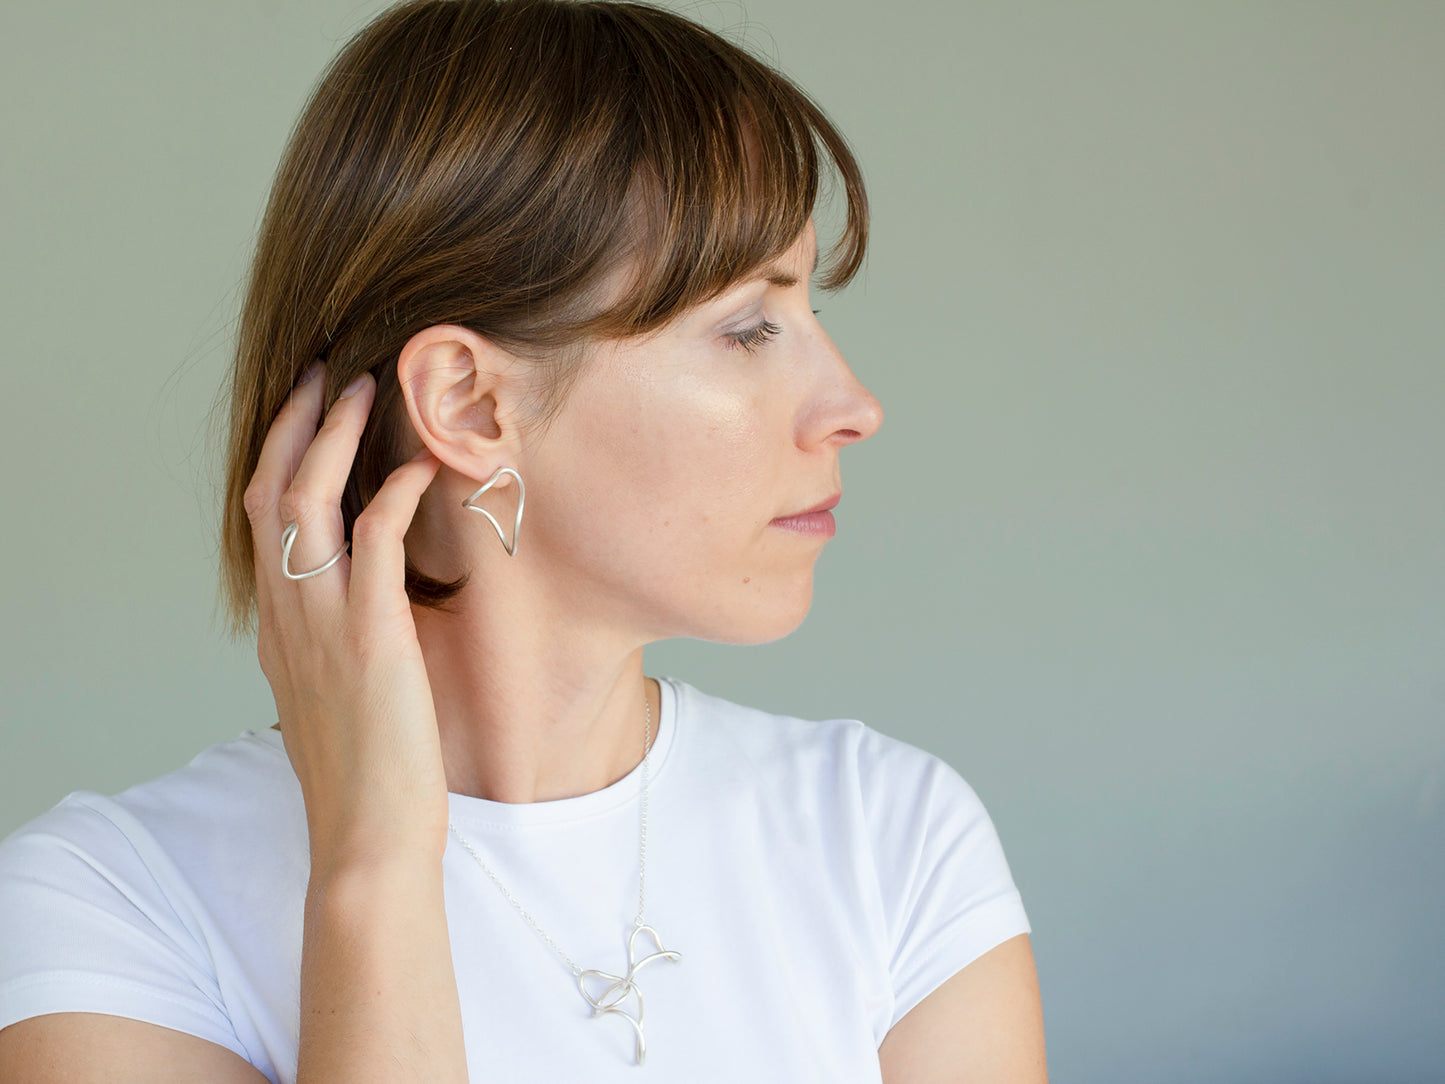 A woman wearing organic shape sterling silver earrings, silver link necklace